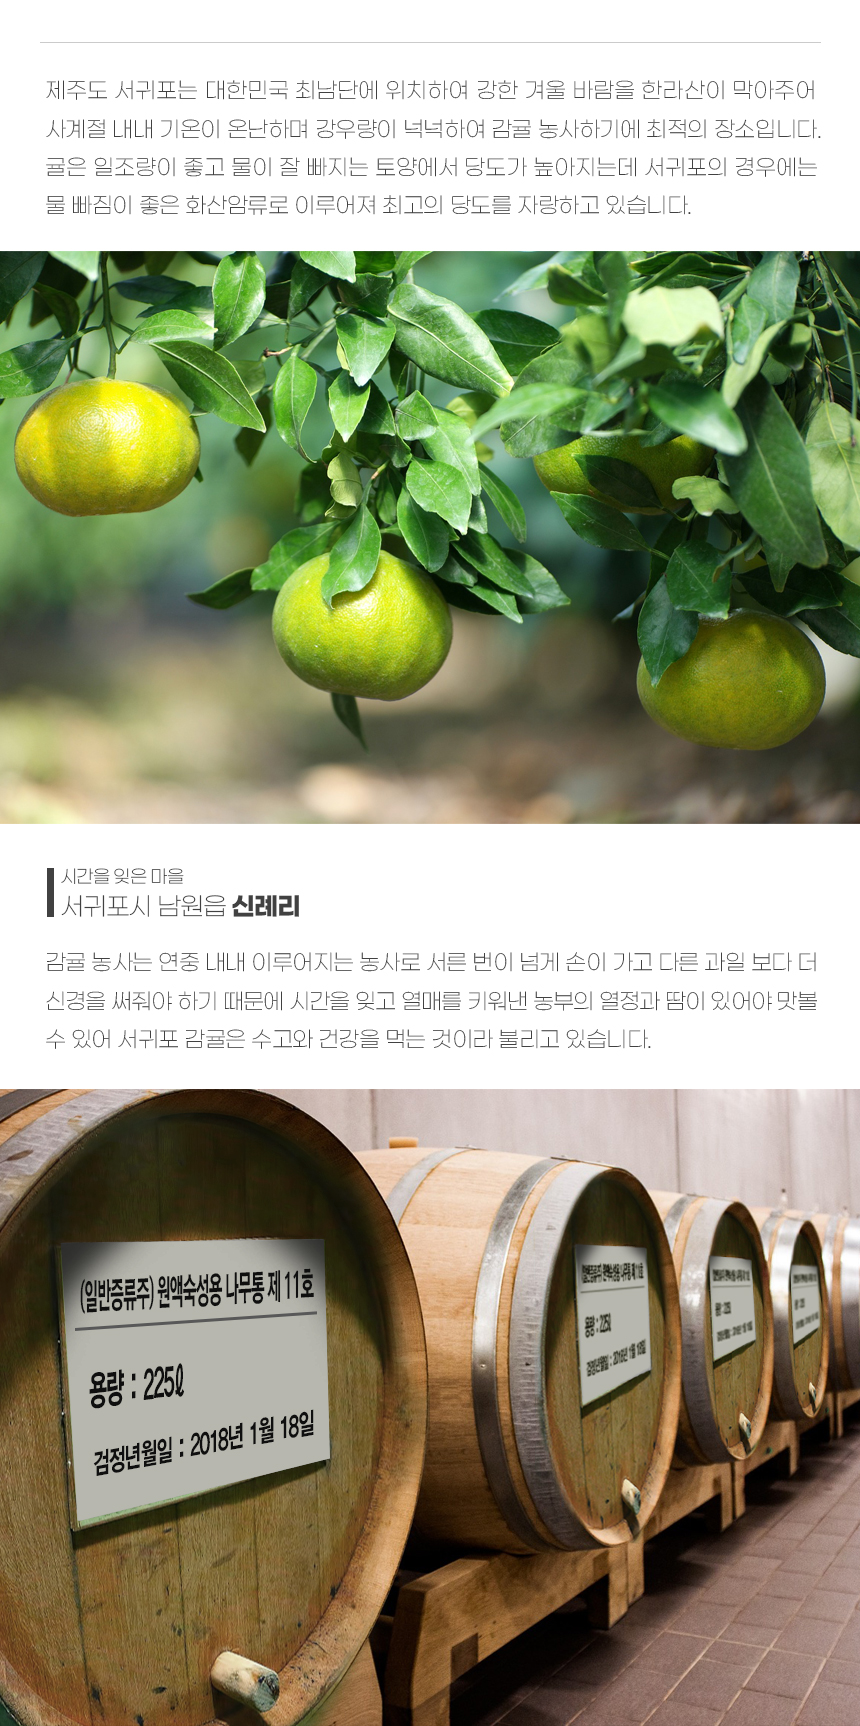 韓國食品-제주감귤 발효주 혼디酒 (과실주 술) 330ml